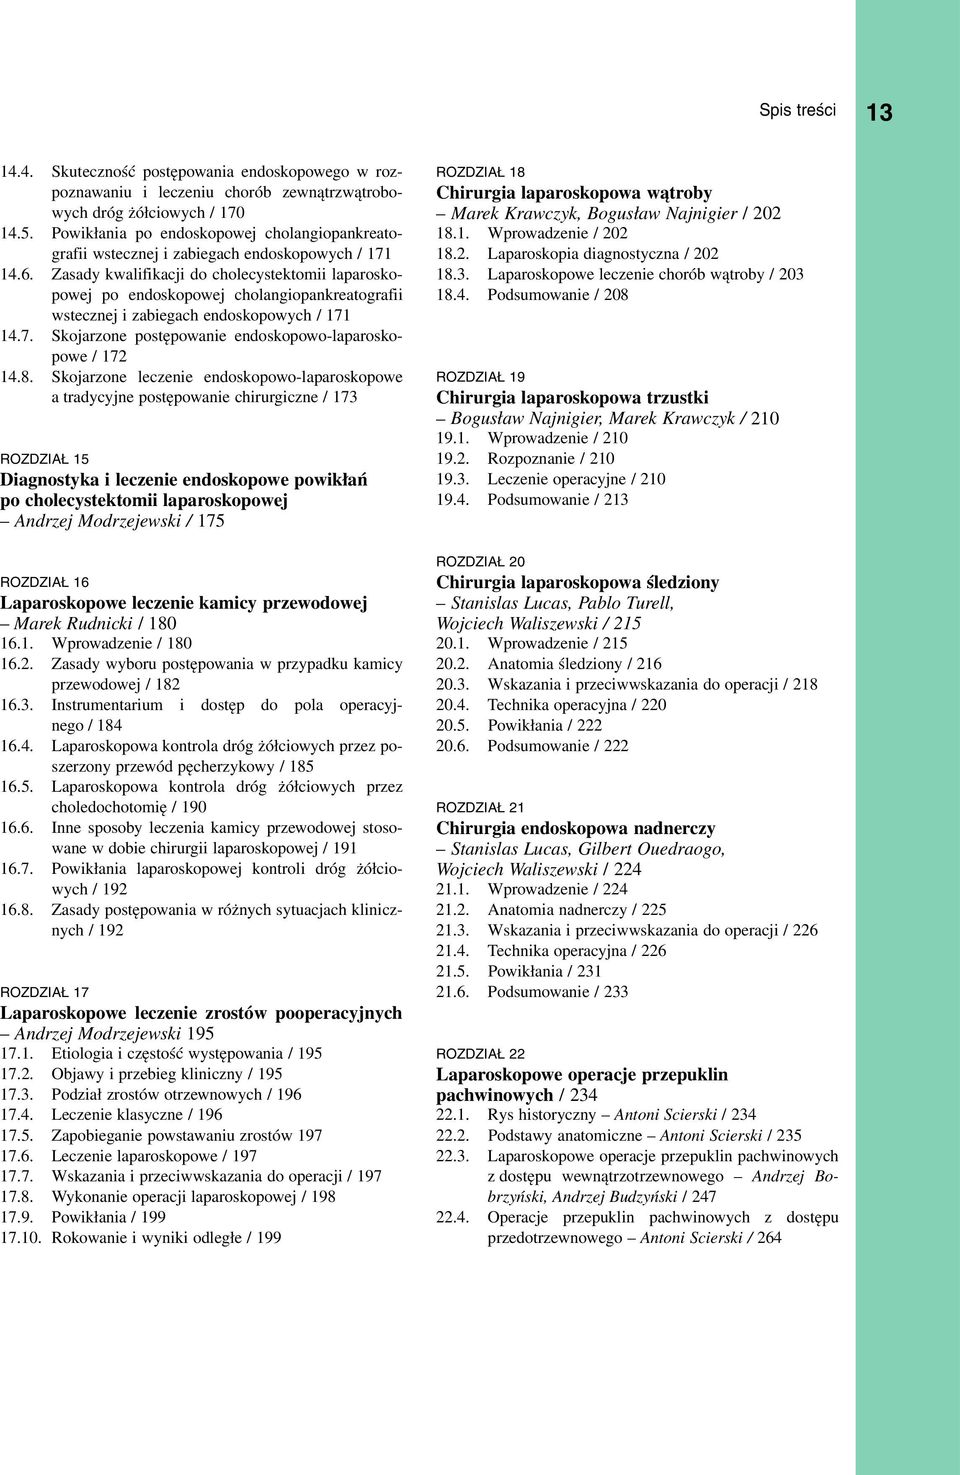 Zasady kwalifikacji do cholecystektomii laparoskopowej po endoskopowej cholangiopankreatografii wstecznej i zabiegach endoskopowych / 171 14.7. Skojarzone postępowanie endoskopowo-laparoskopowe / 172 14.